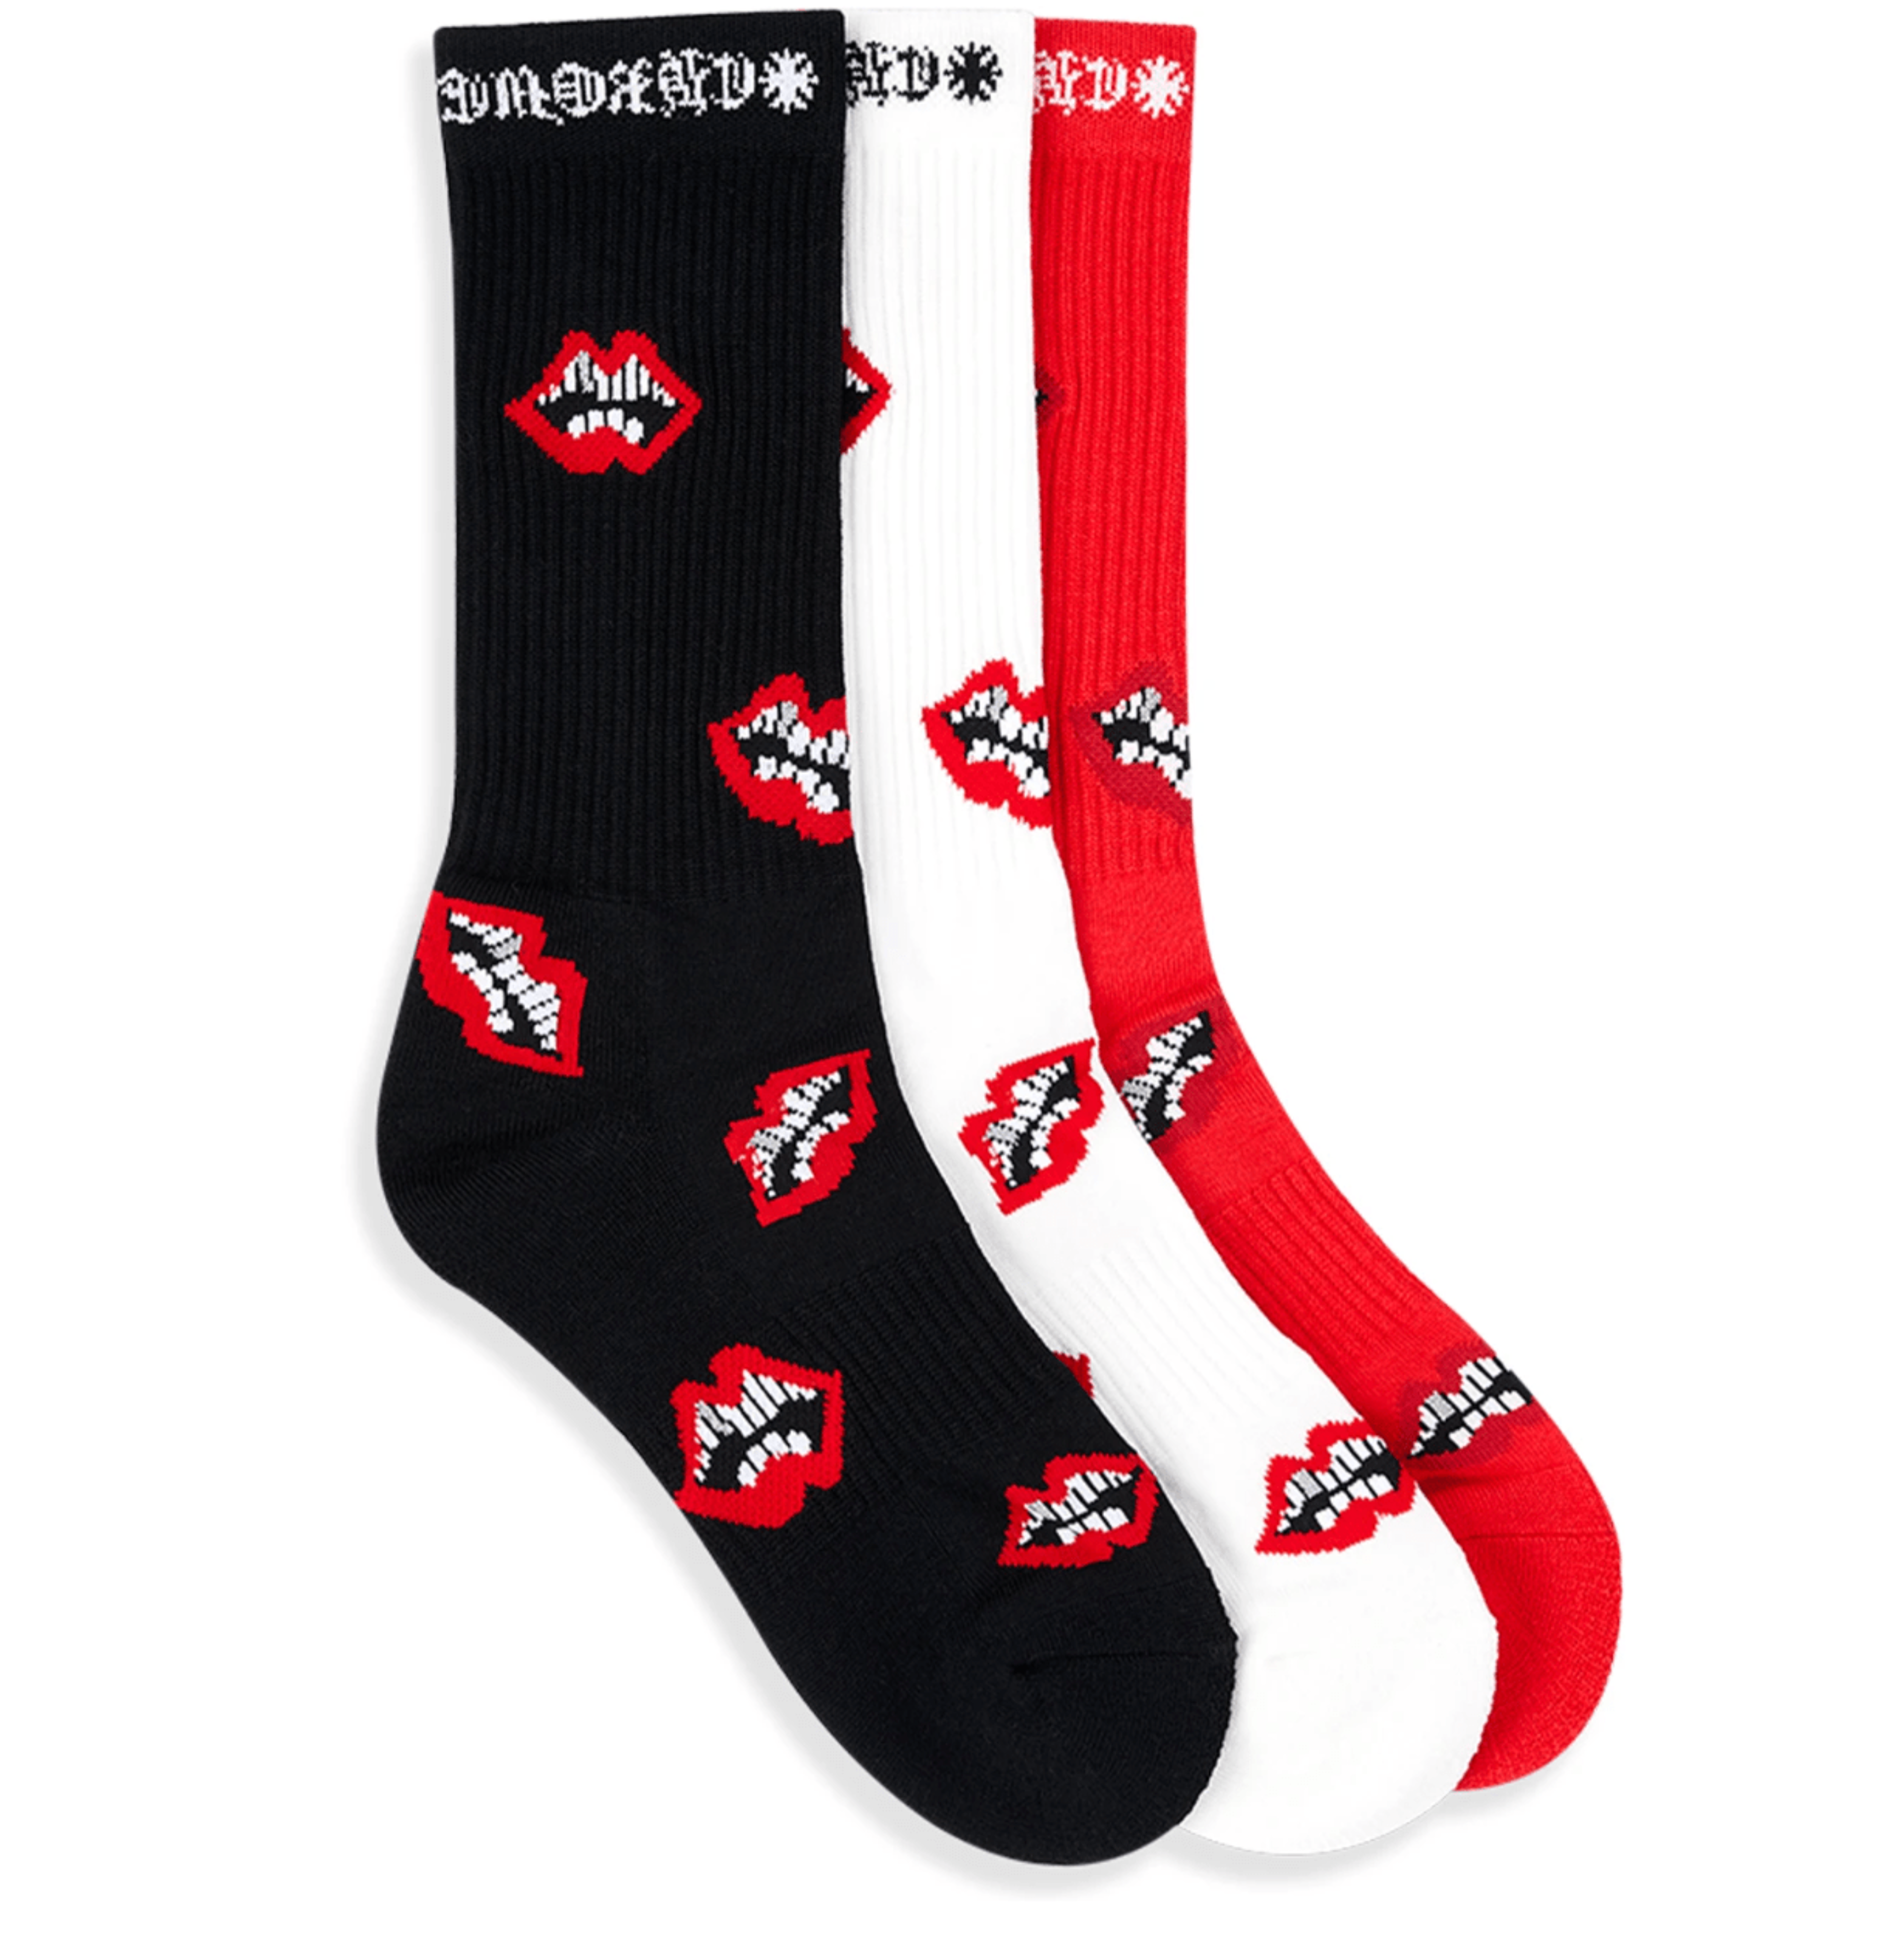 Alternate View 1 of Chrome Hearts Chomper Socks Red White Black (3 Pack)